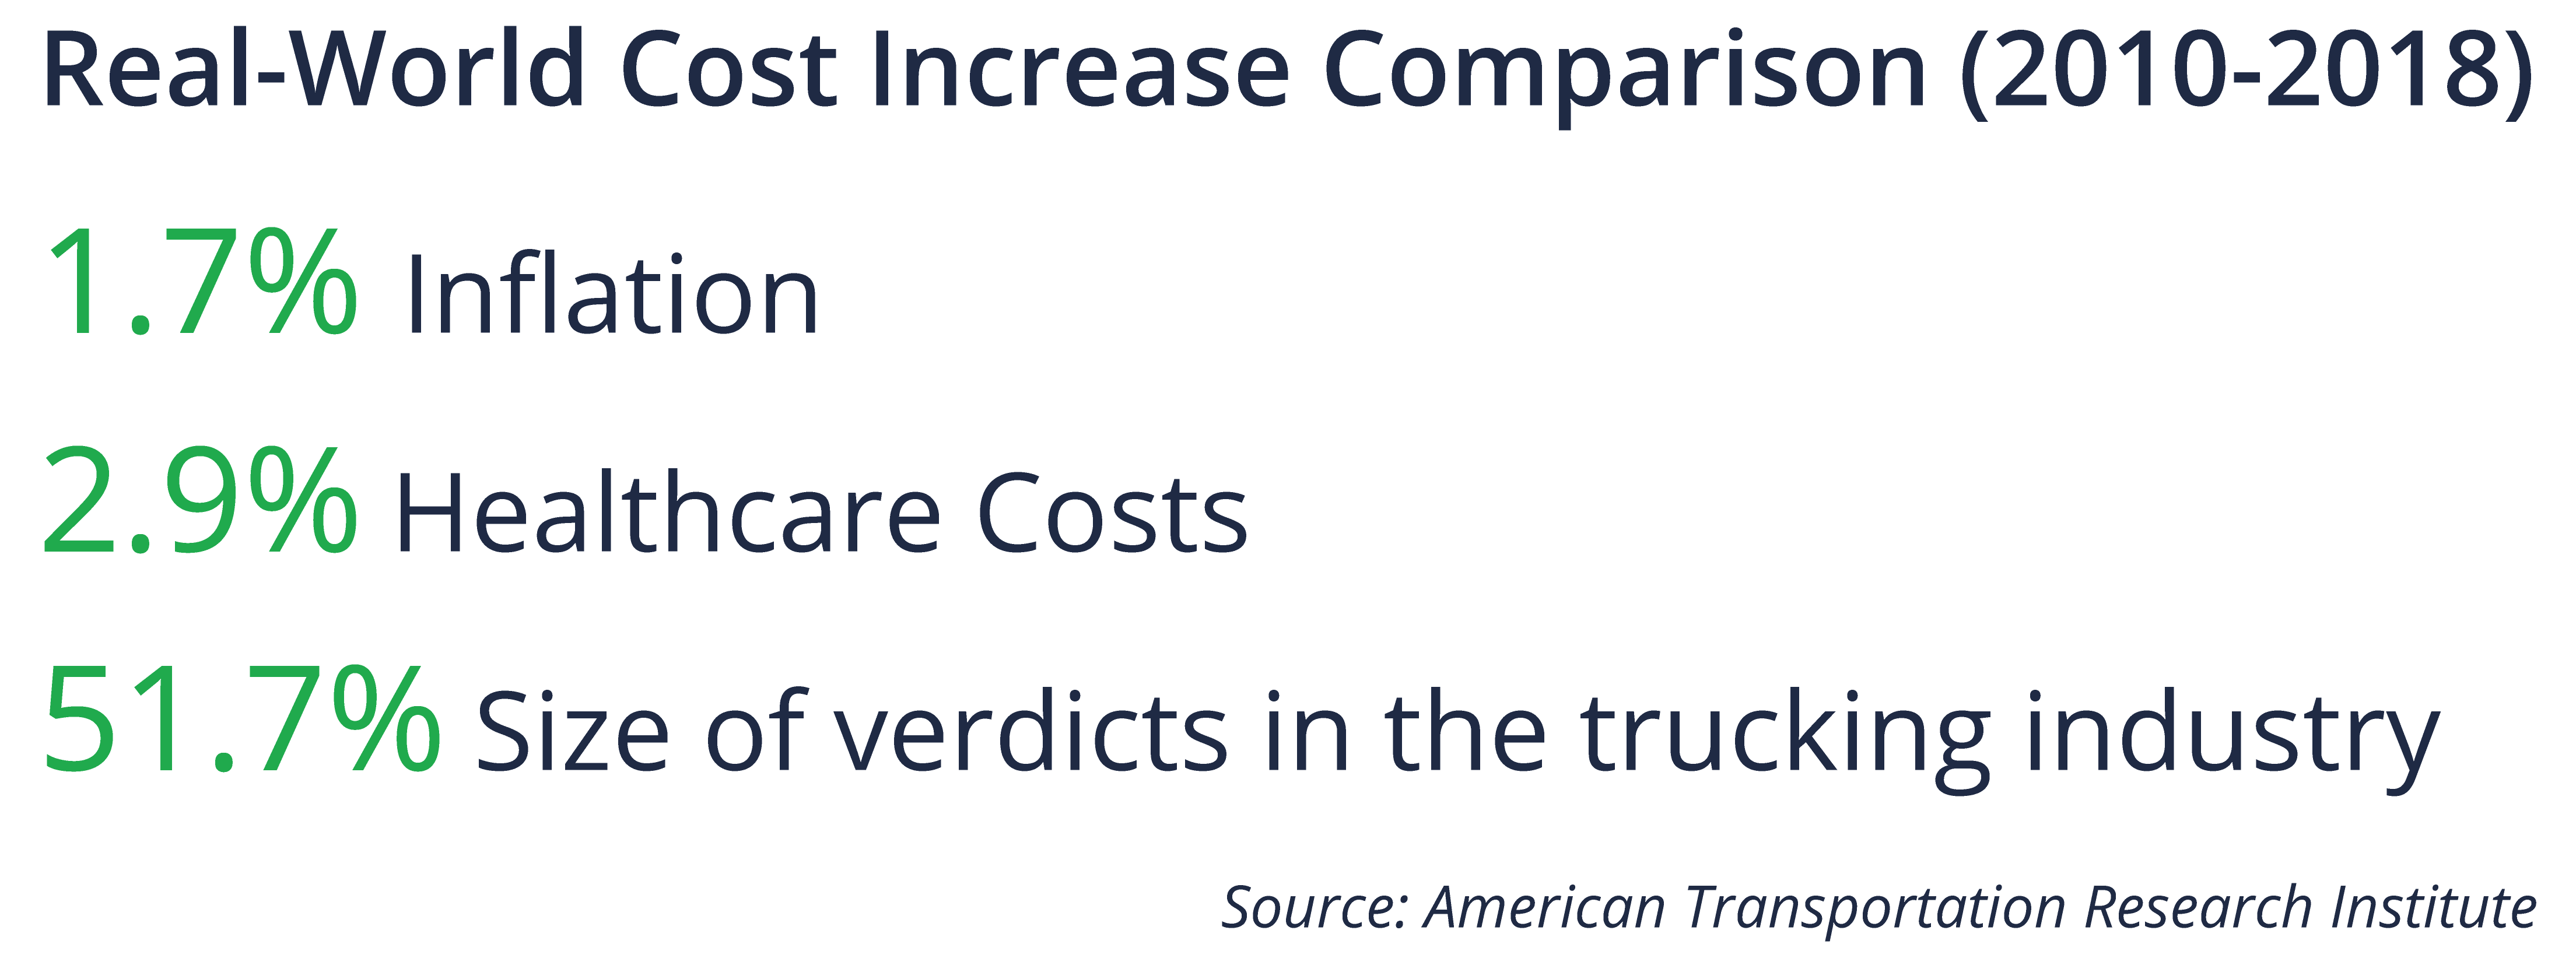 Cost Increase Comparison